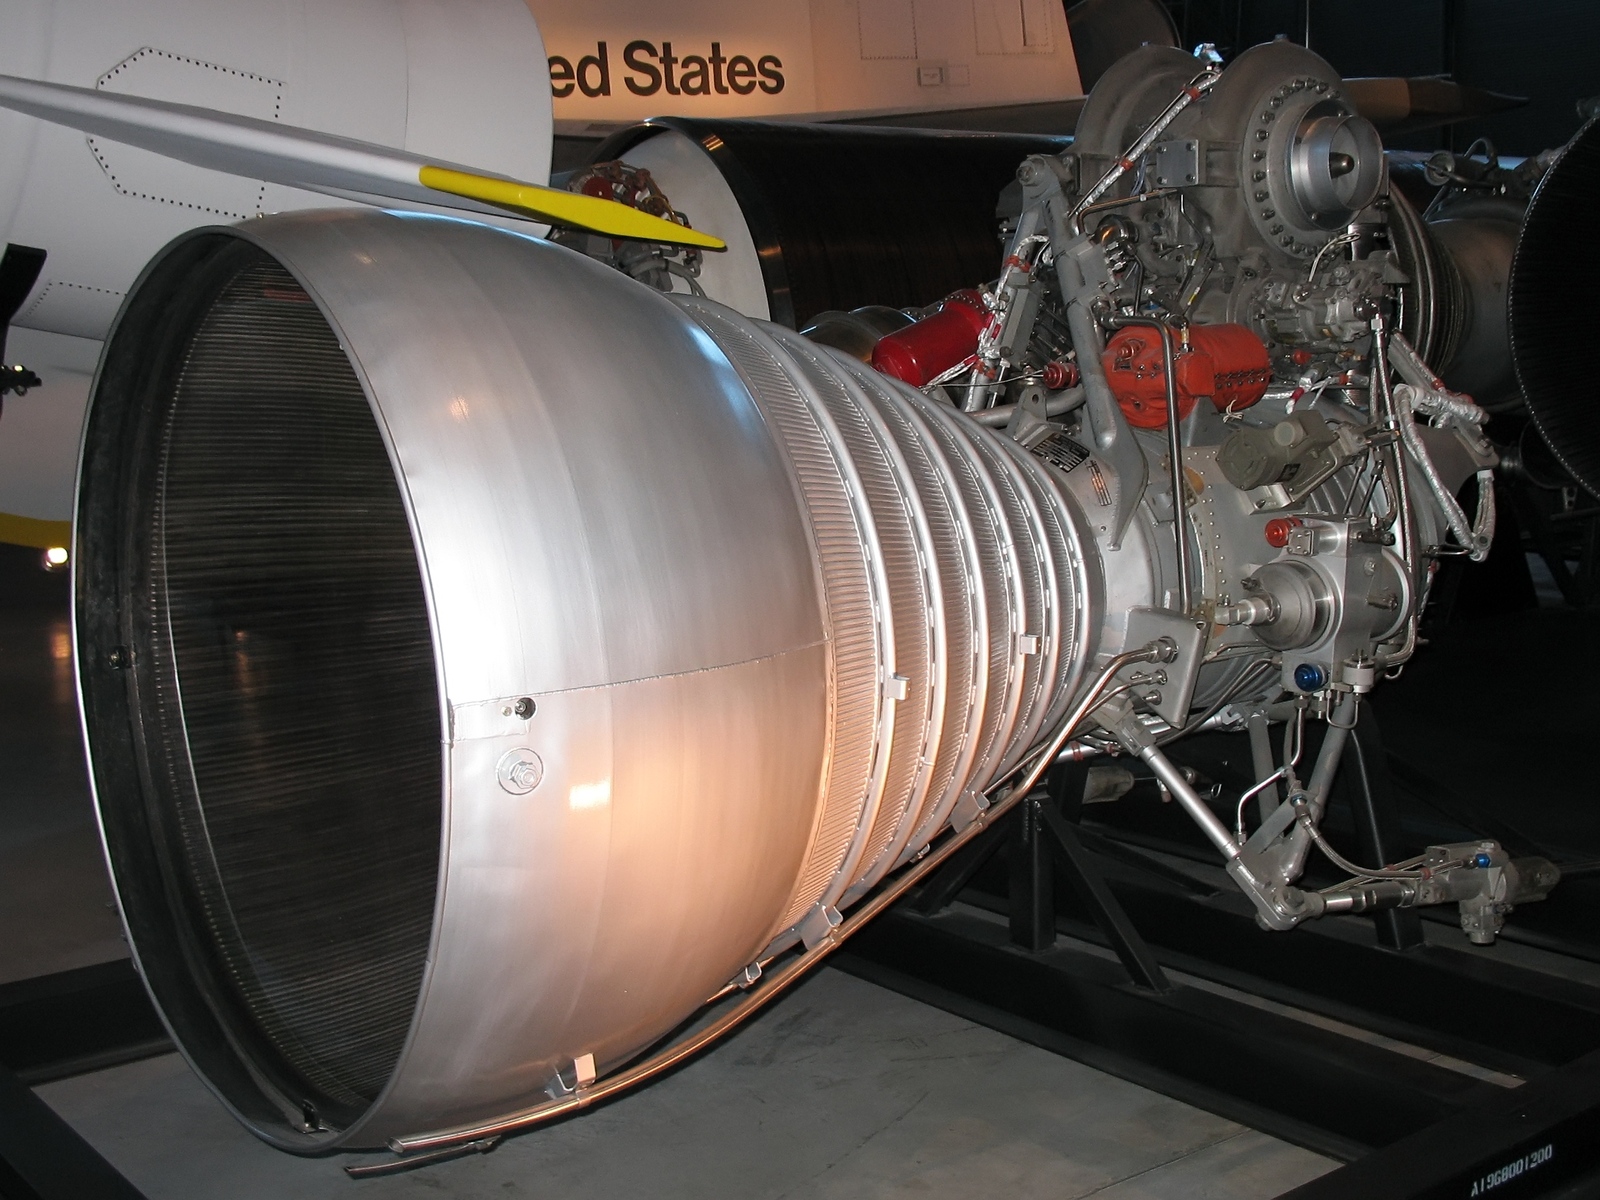 H-1 Rocket Engine For Saturn